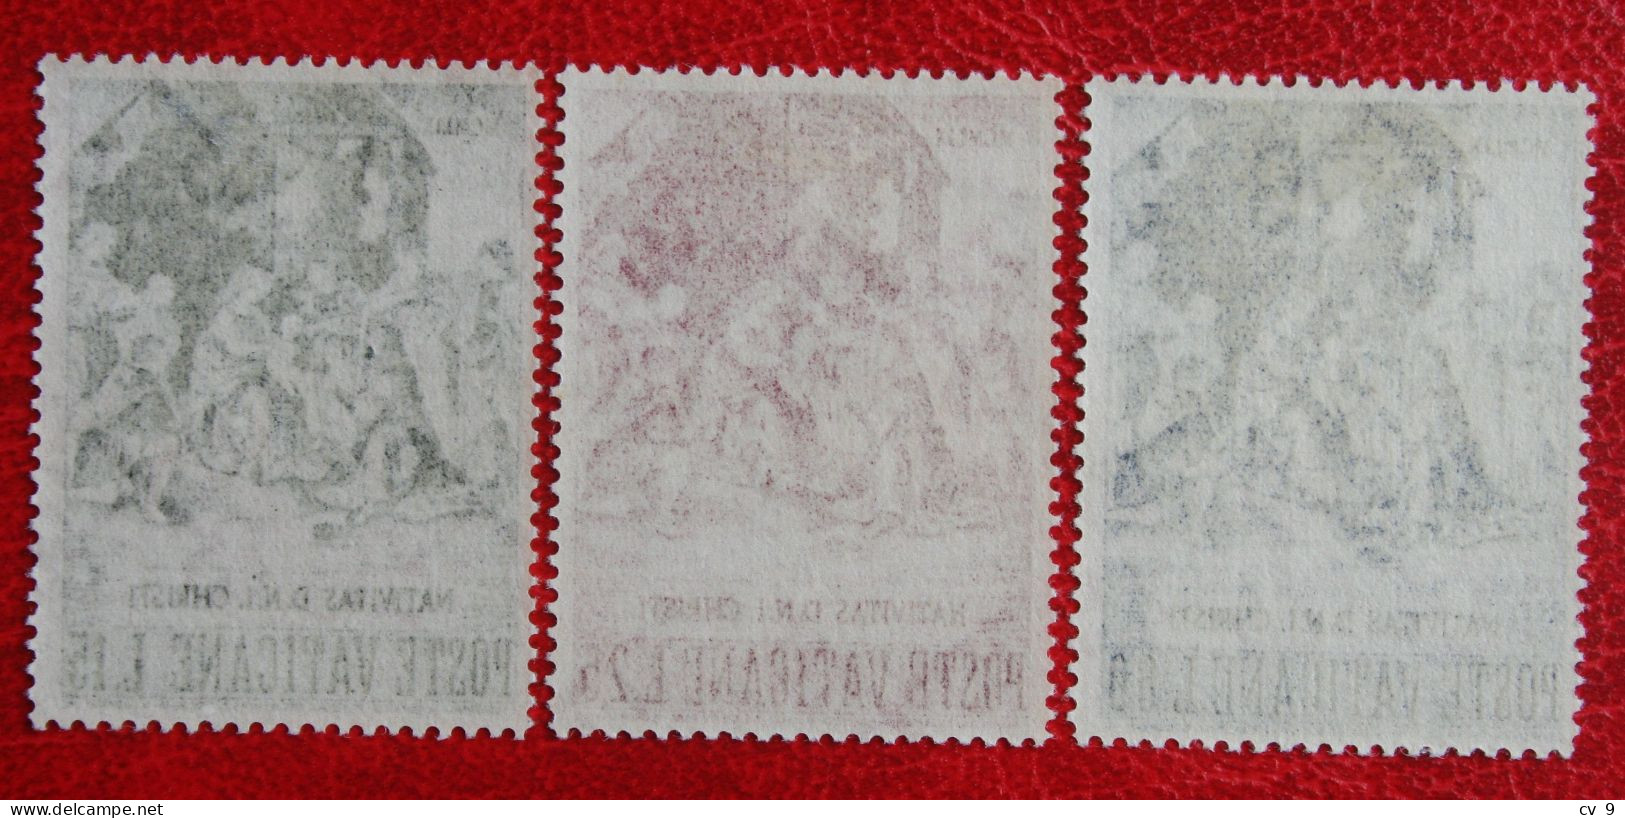 Natale Weihnachten Xmas Noel Kerst 1959 Mi 327-329 Yv 284-286 Ongebruikt / MH / * VATICANO VATICAN VATICAAN - Unused Stamps